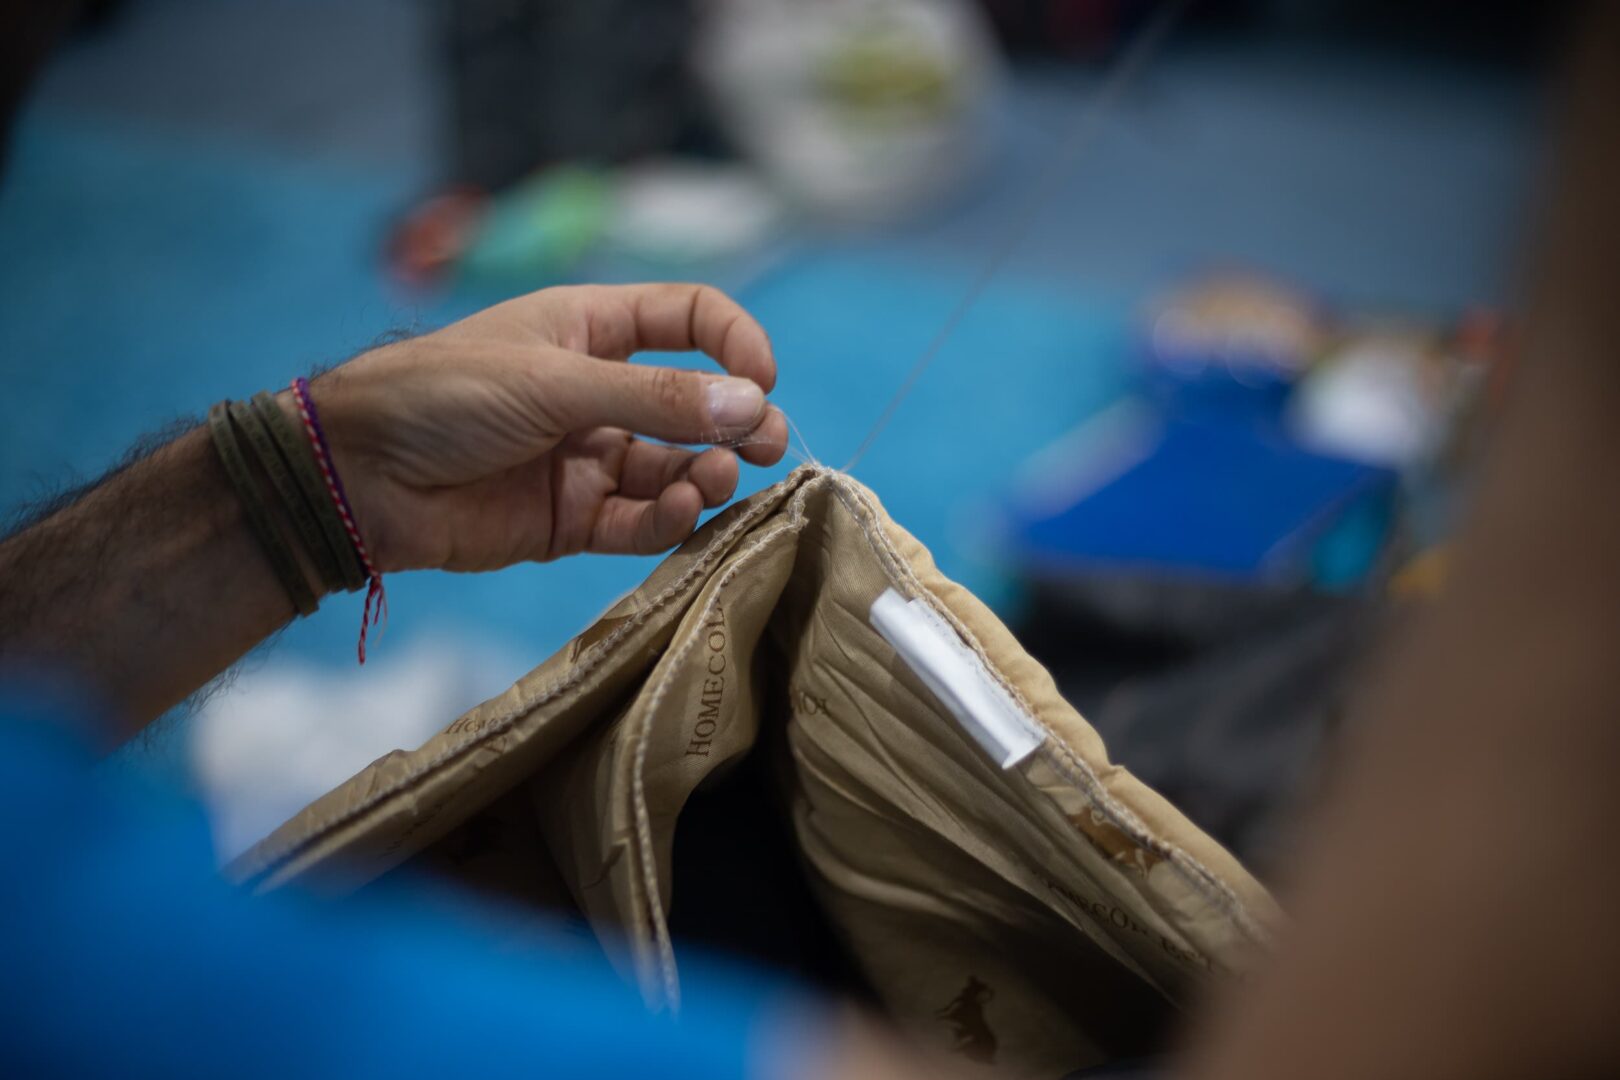 sewing a sleeping bag Tadjikistan